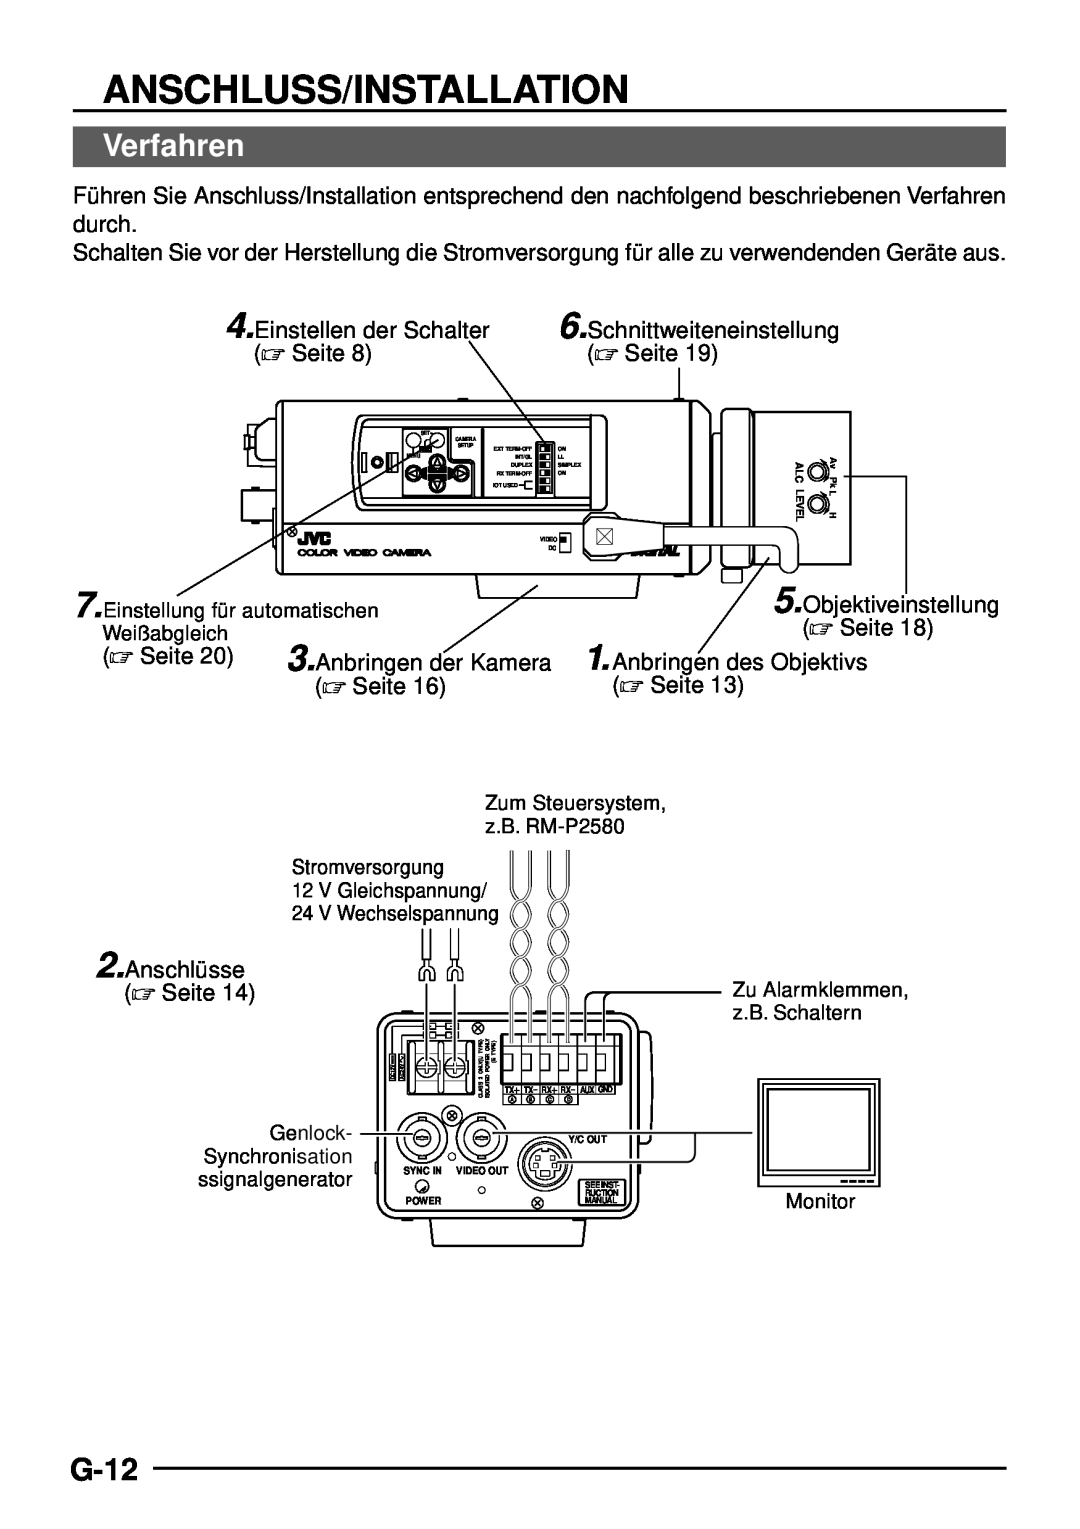 JVC TK-C1460 manual Anschluss/Installation, Verfahren, G-12 